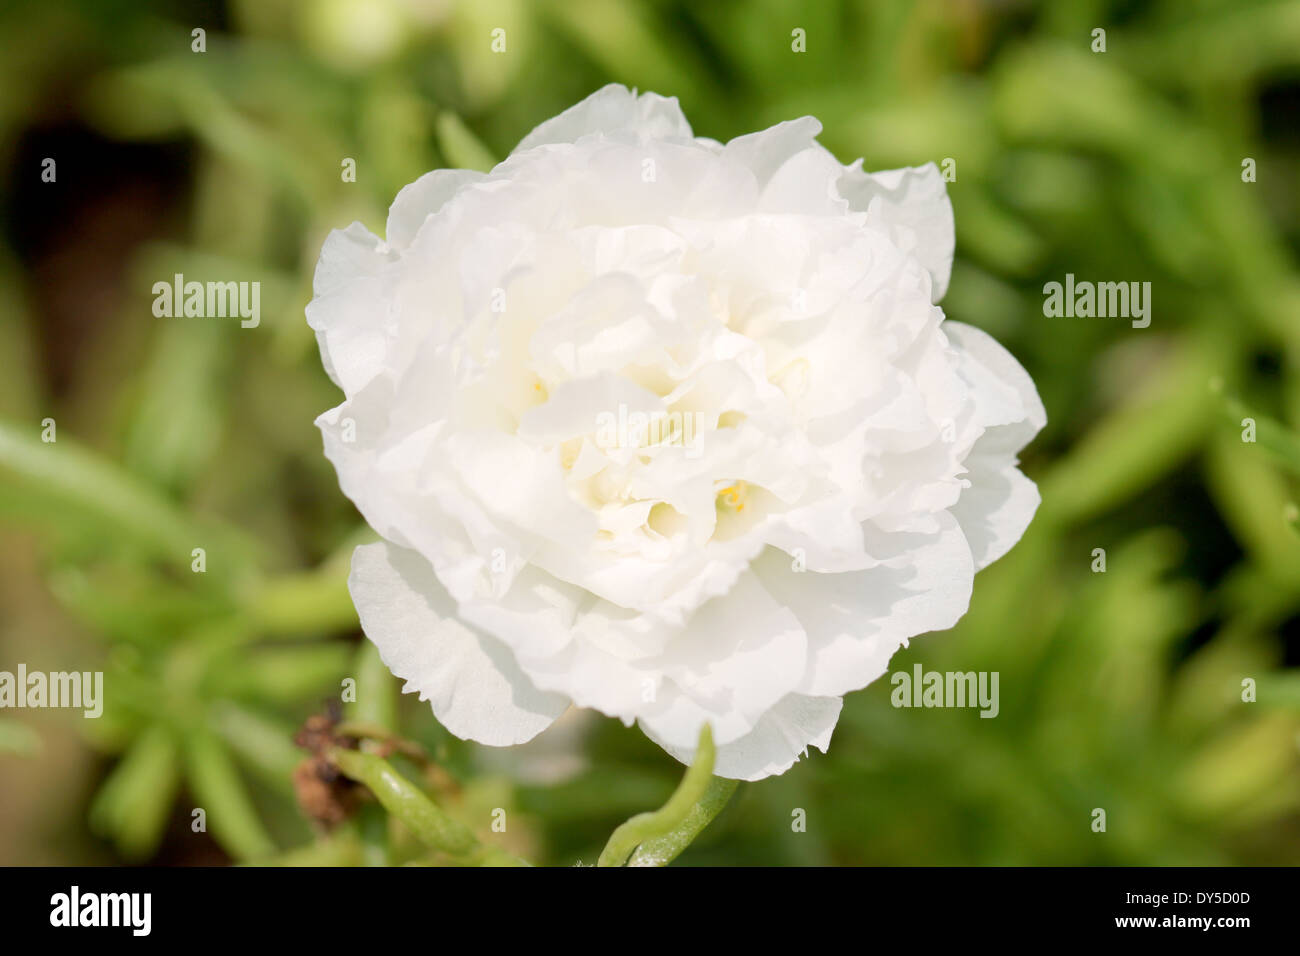 White Common Purslane flower in the garden. Stock Photo